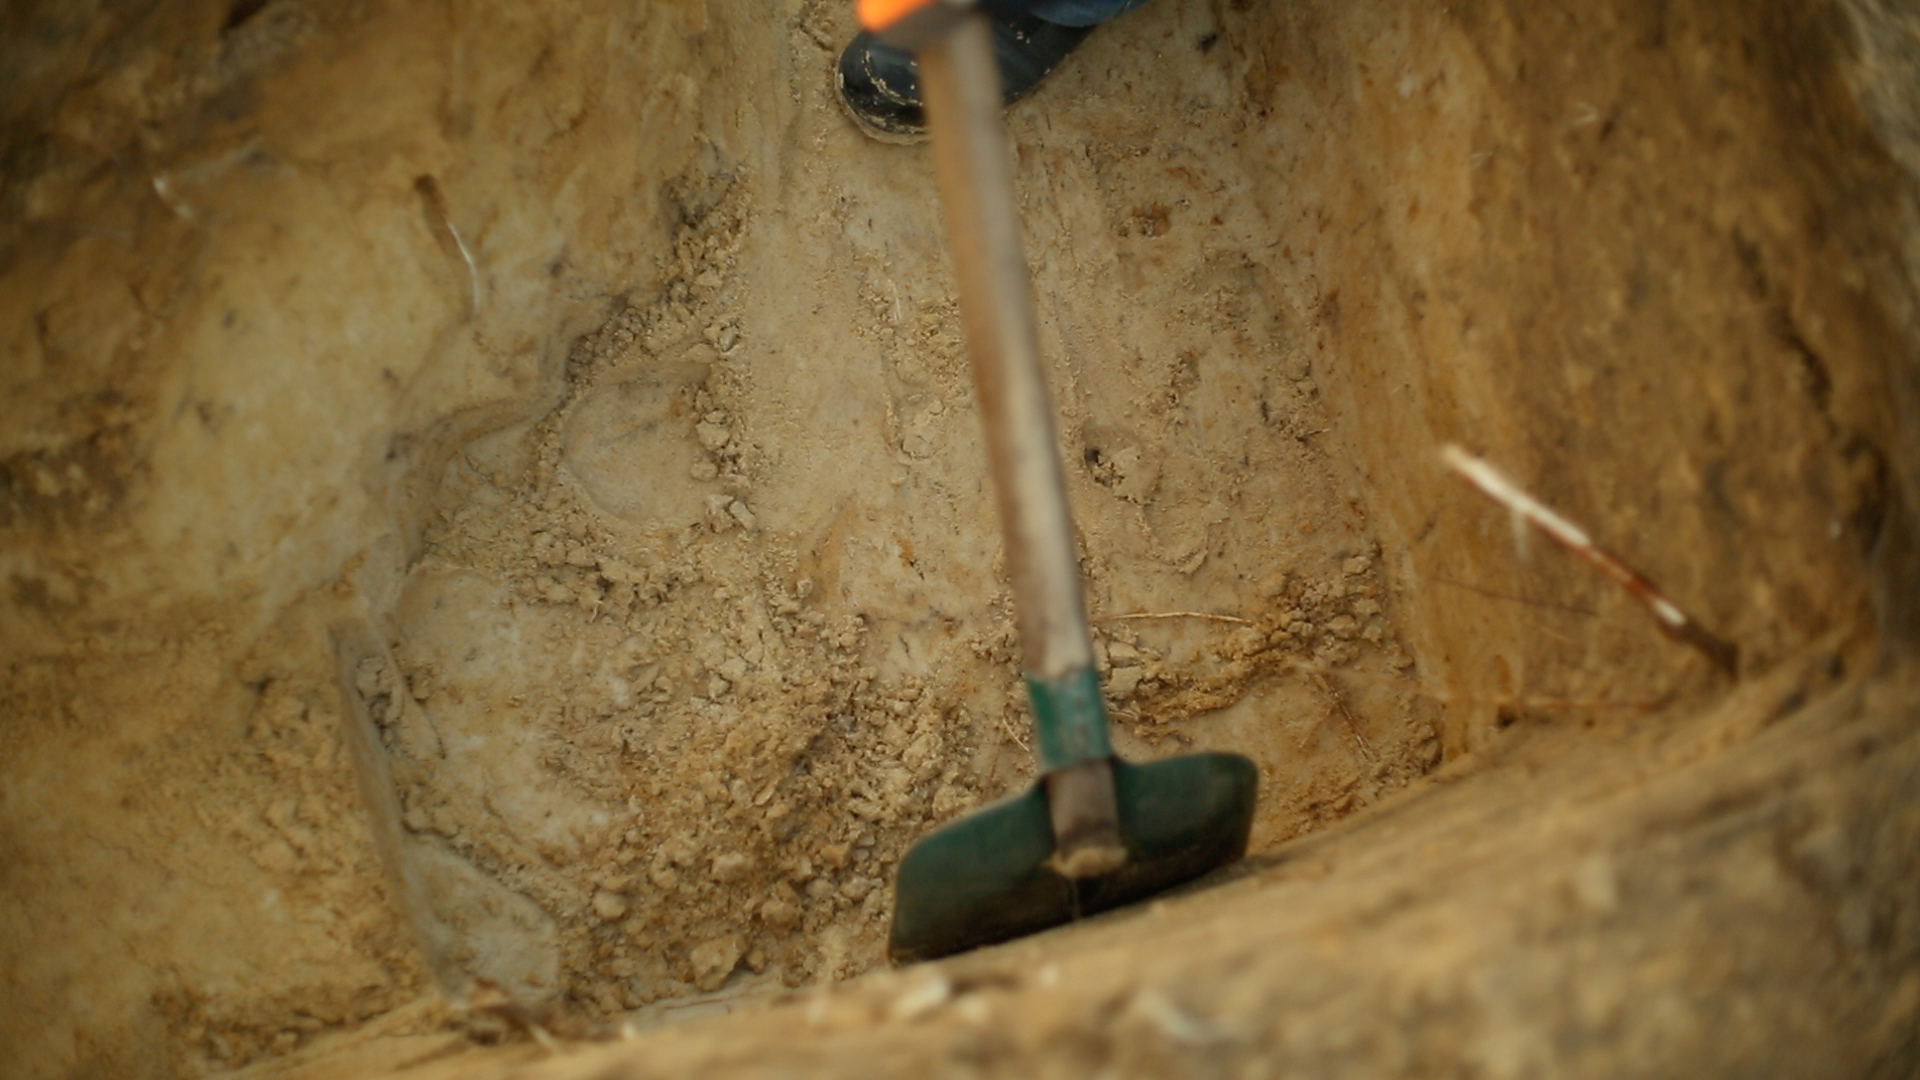 Excavating Sobibor